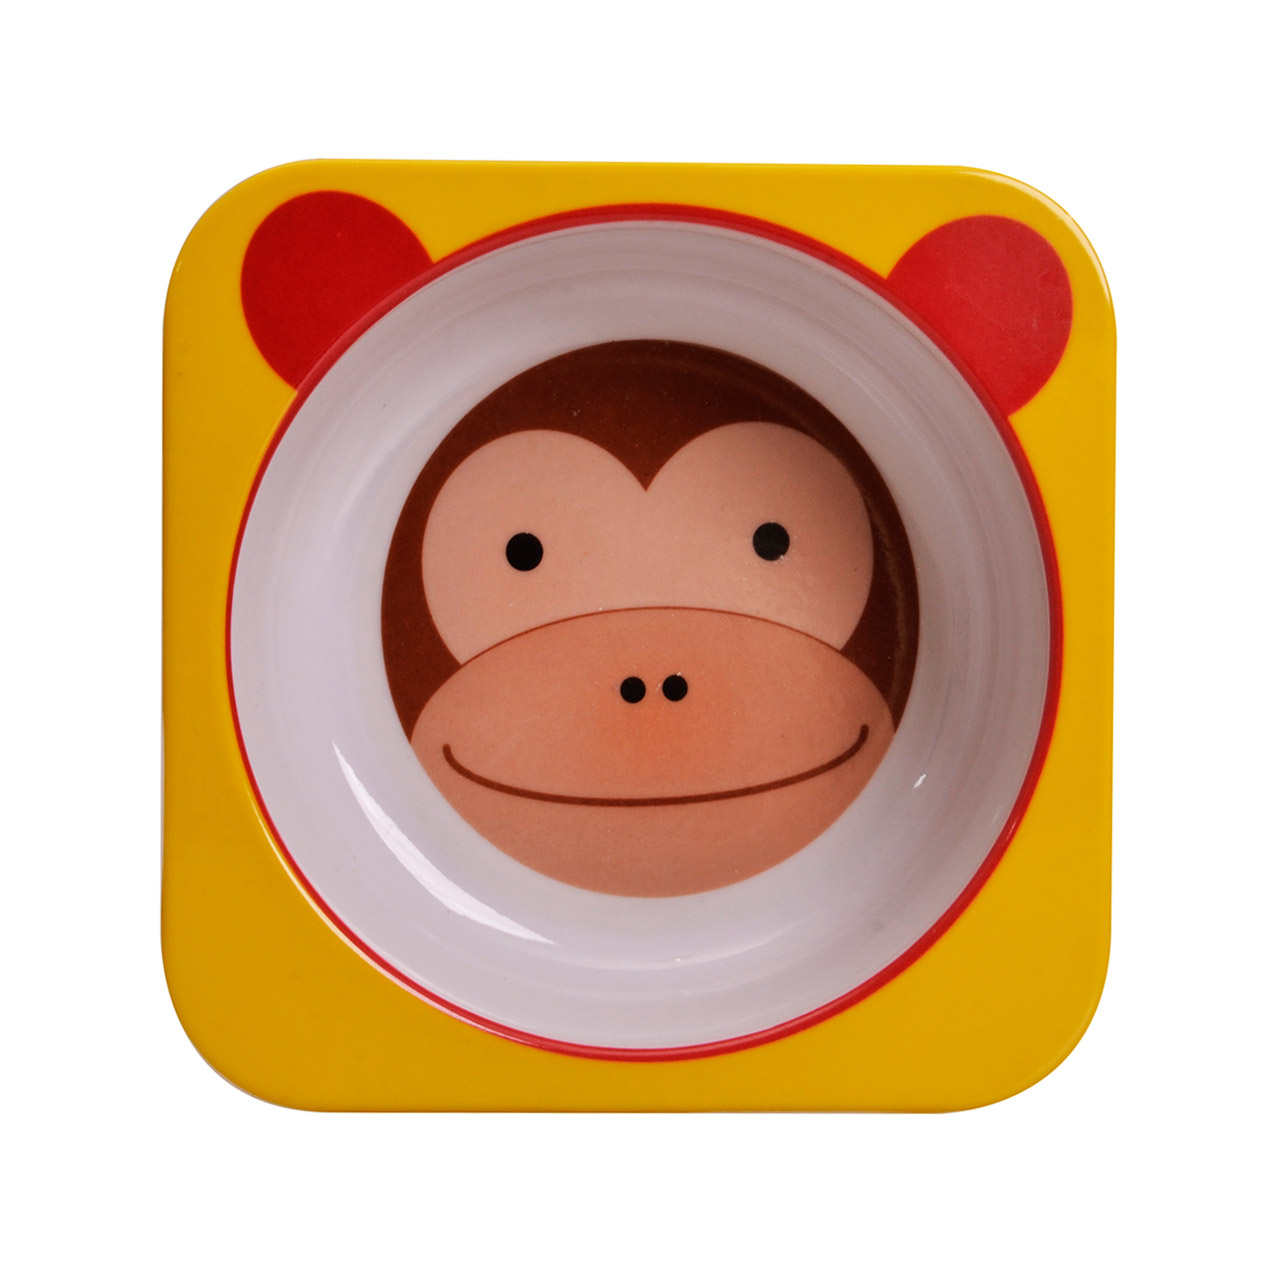 کاسه کودک مهروز مدل 5085 طرح میمون